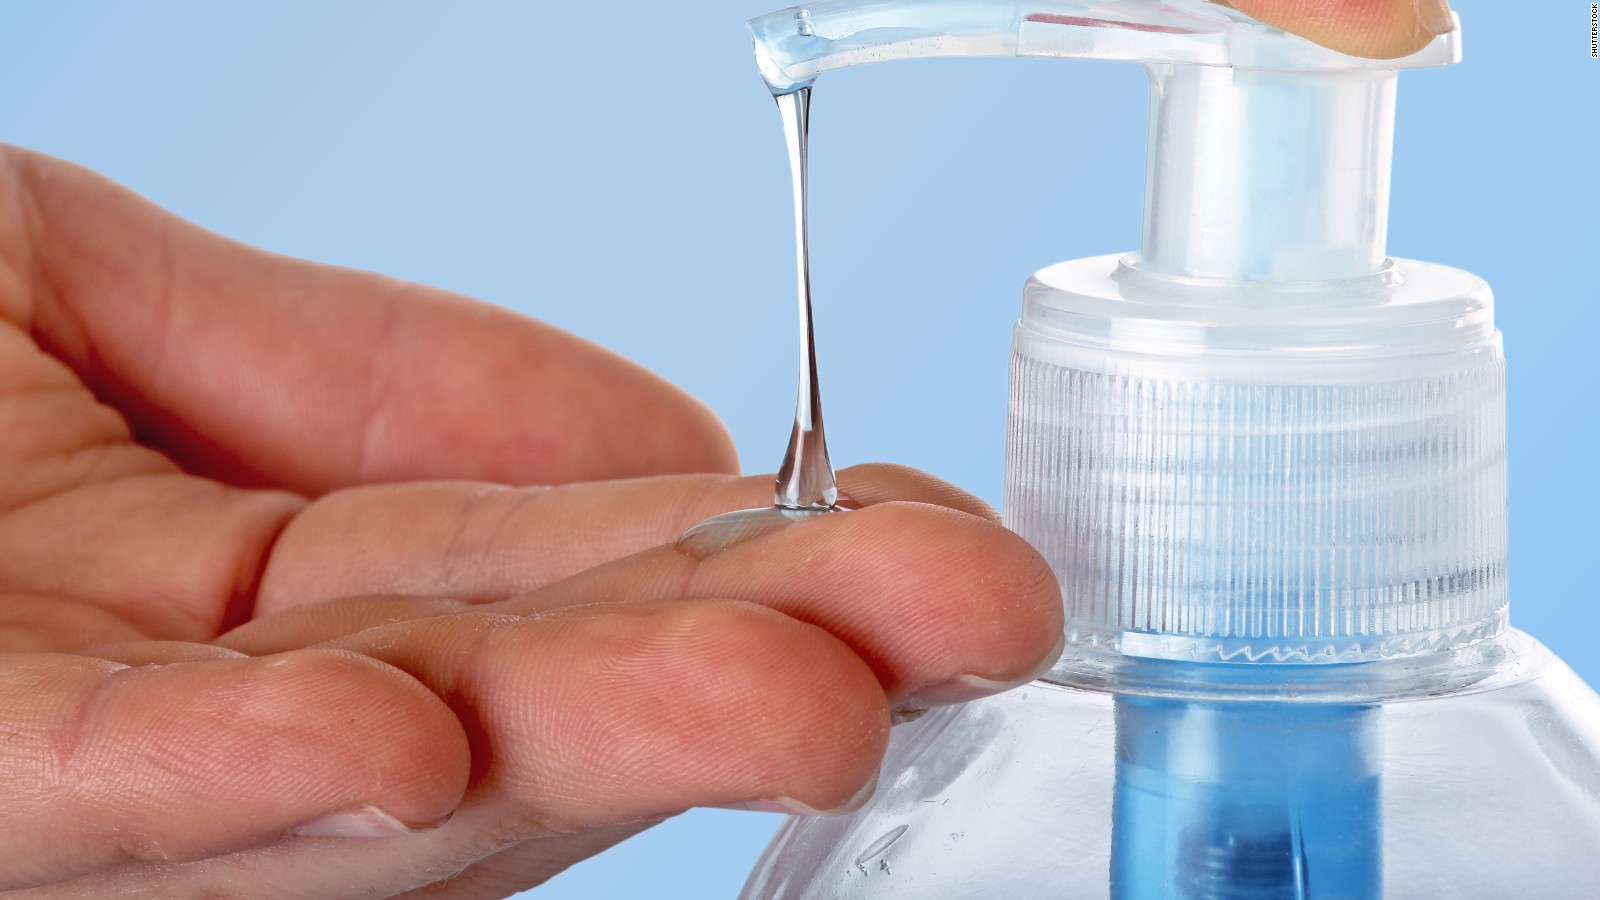 Cục Quản lý Dược thu hồi trên toàn quốc Sữa rửa tay sạch khuẩn Dr. Clean hương dâu - Ảnh 1.